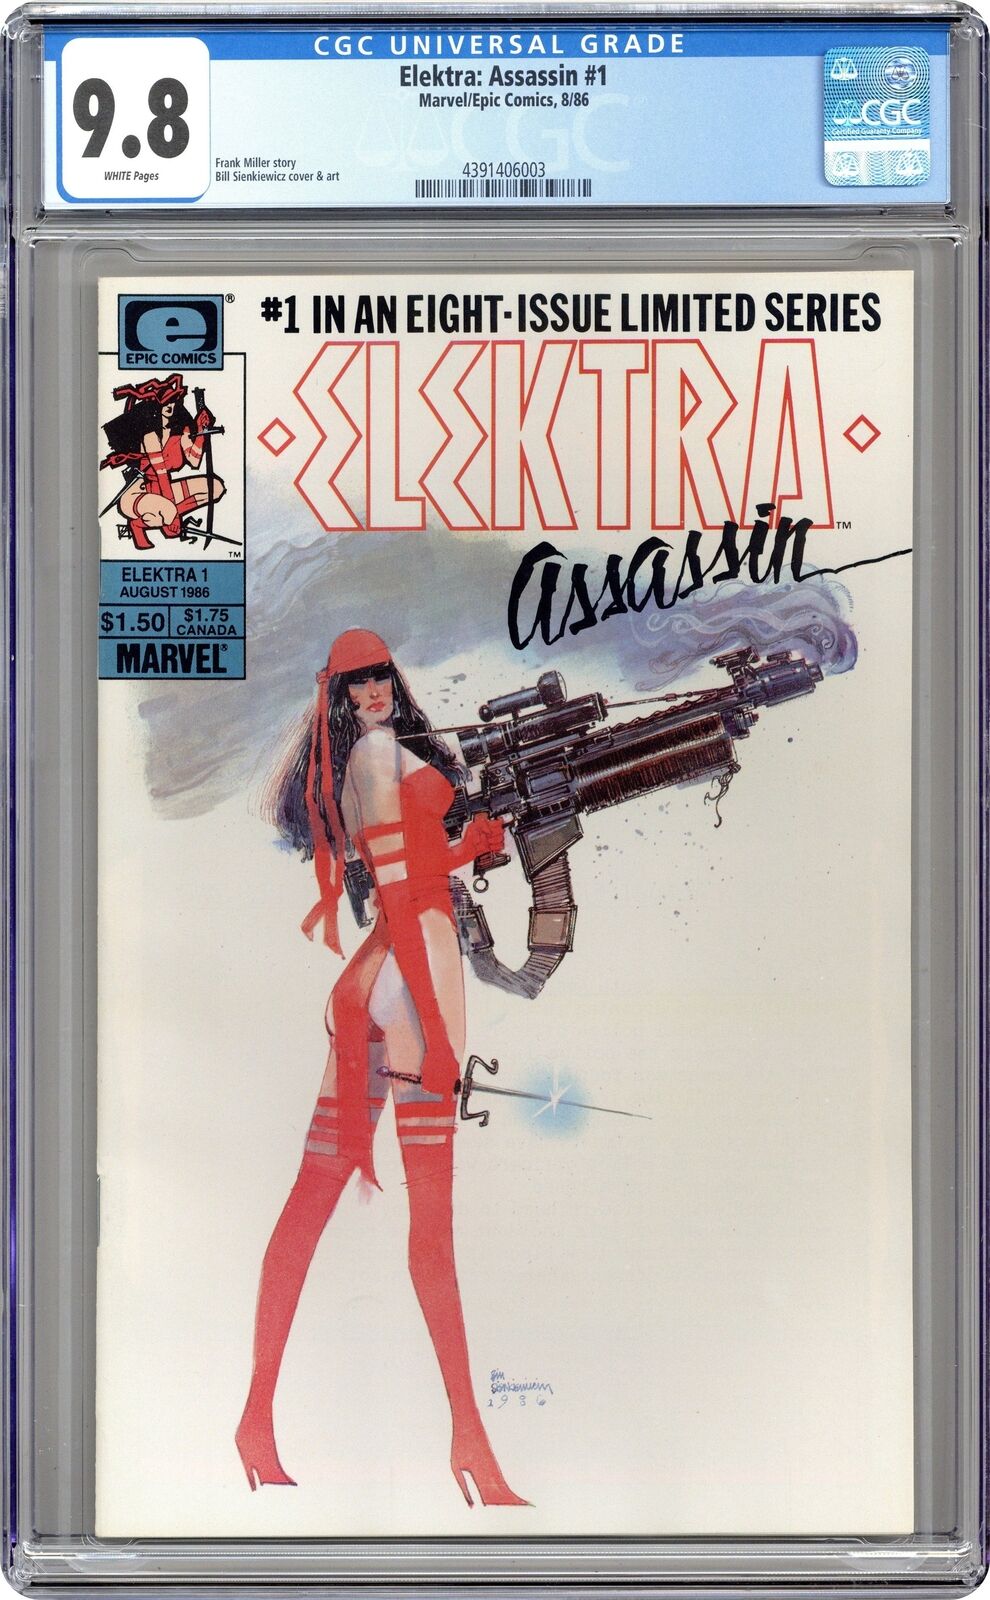 Elektra Assassin #1 CGC 9.8 1986 4391406003